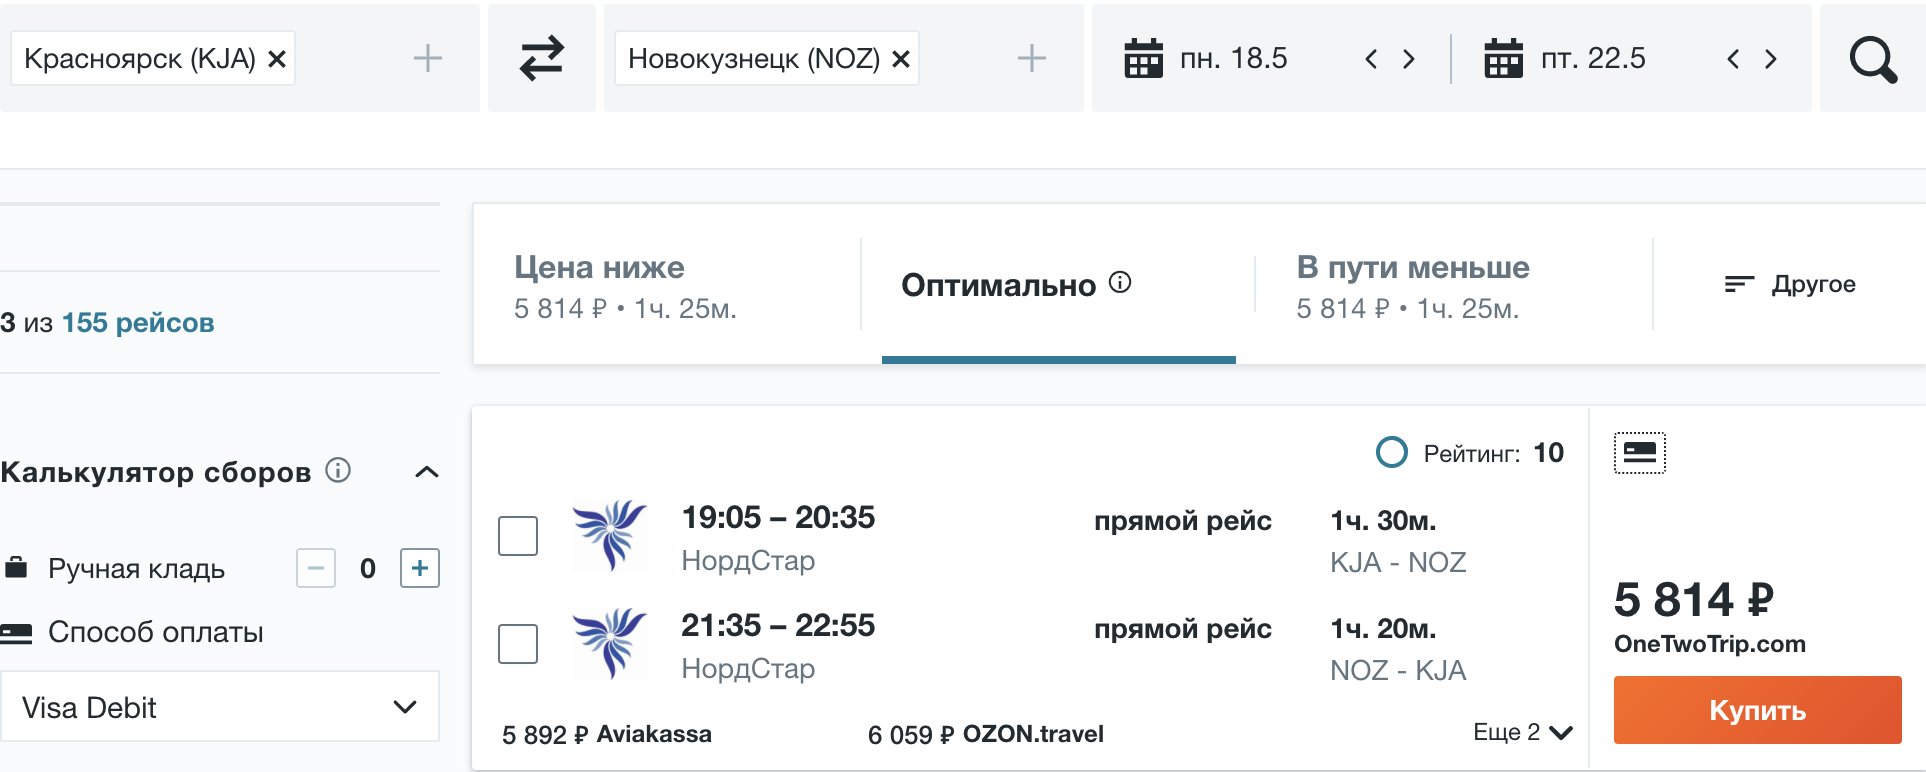 новокузнецк красноярск авиабилеты прямые рейсы цена